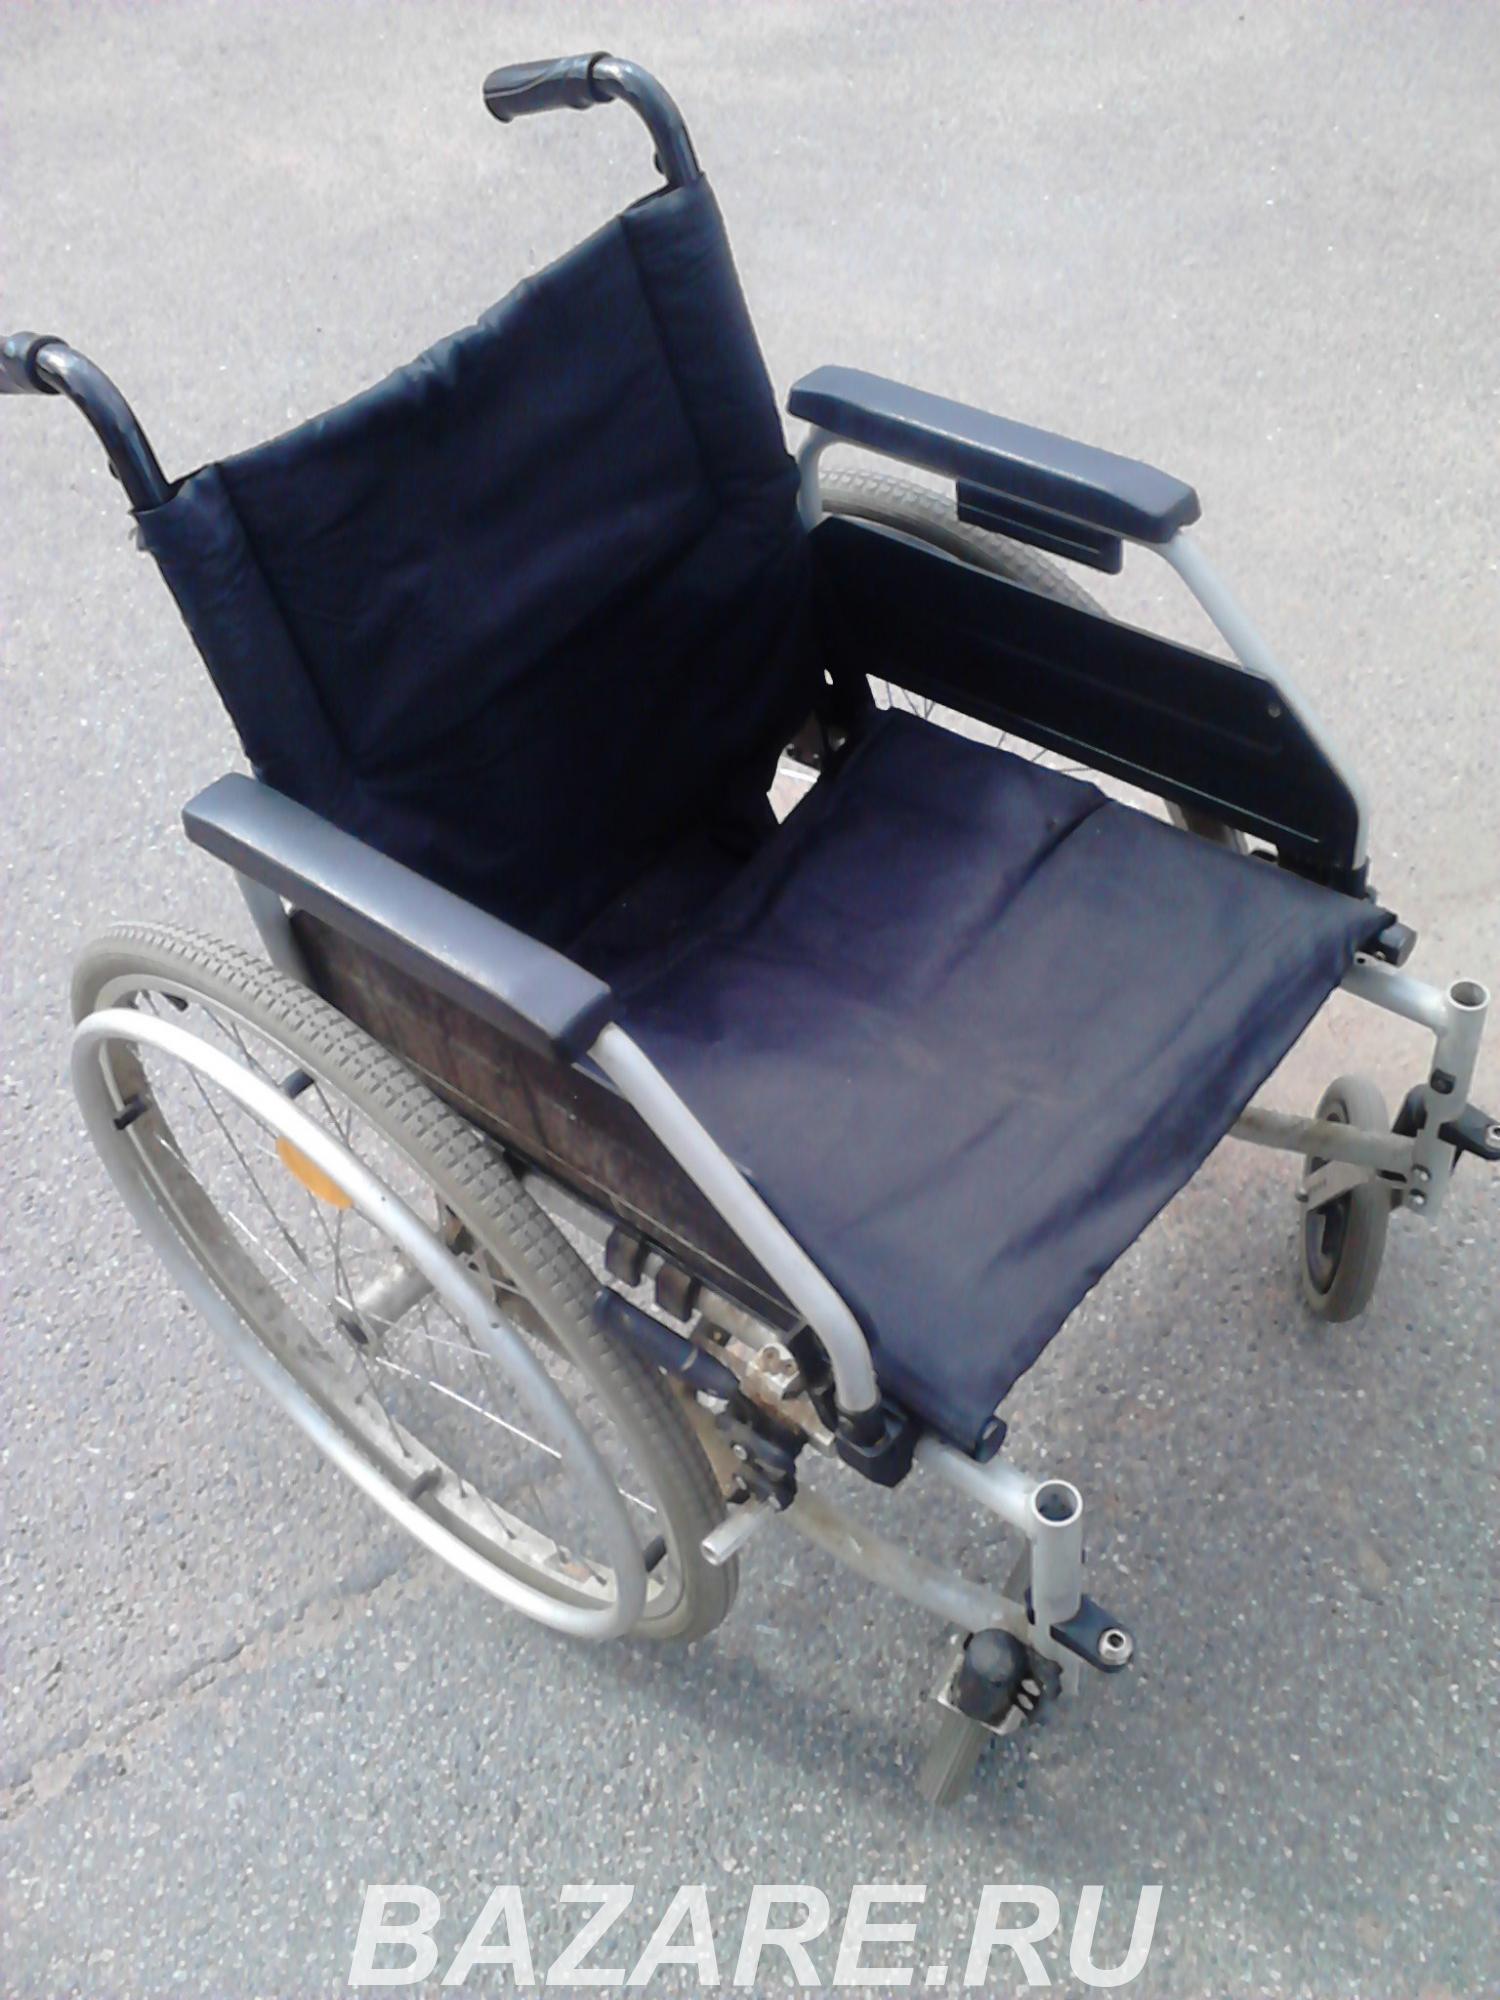 Ремонт инвалидных механических кресел-колясок на дому в СПб., Санкт-Петербург